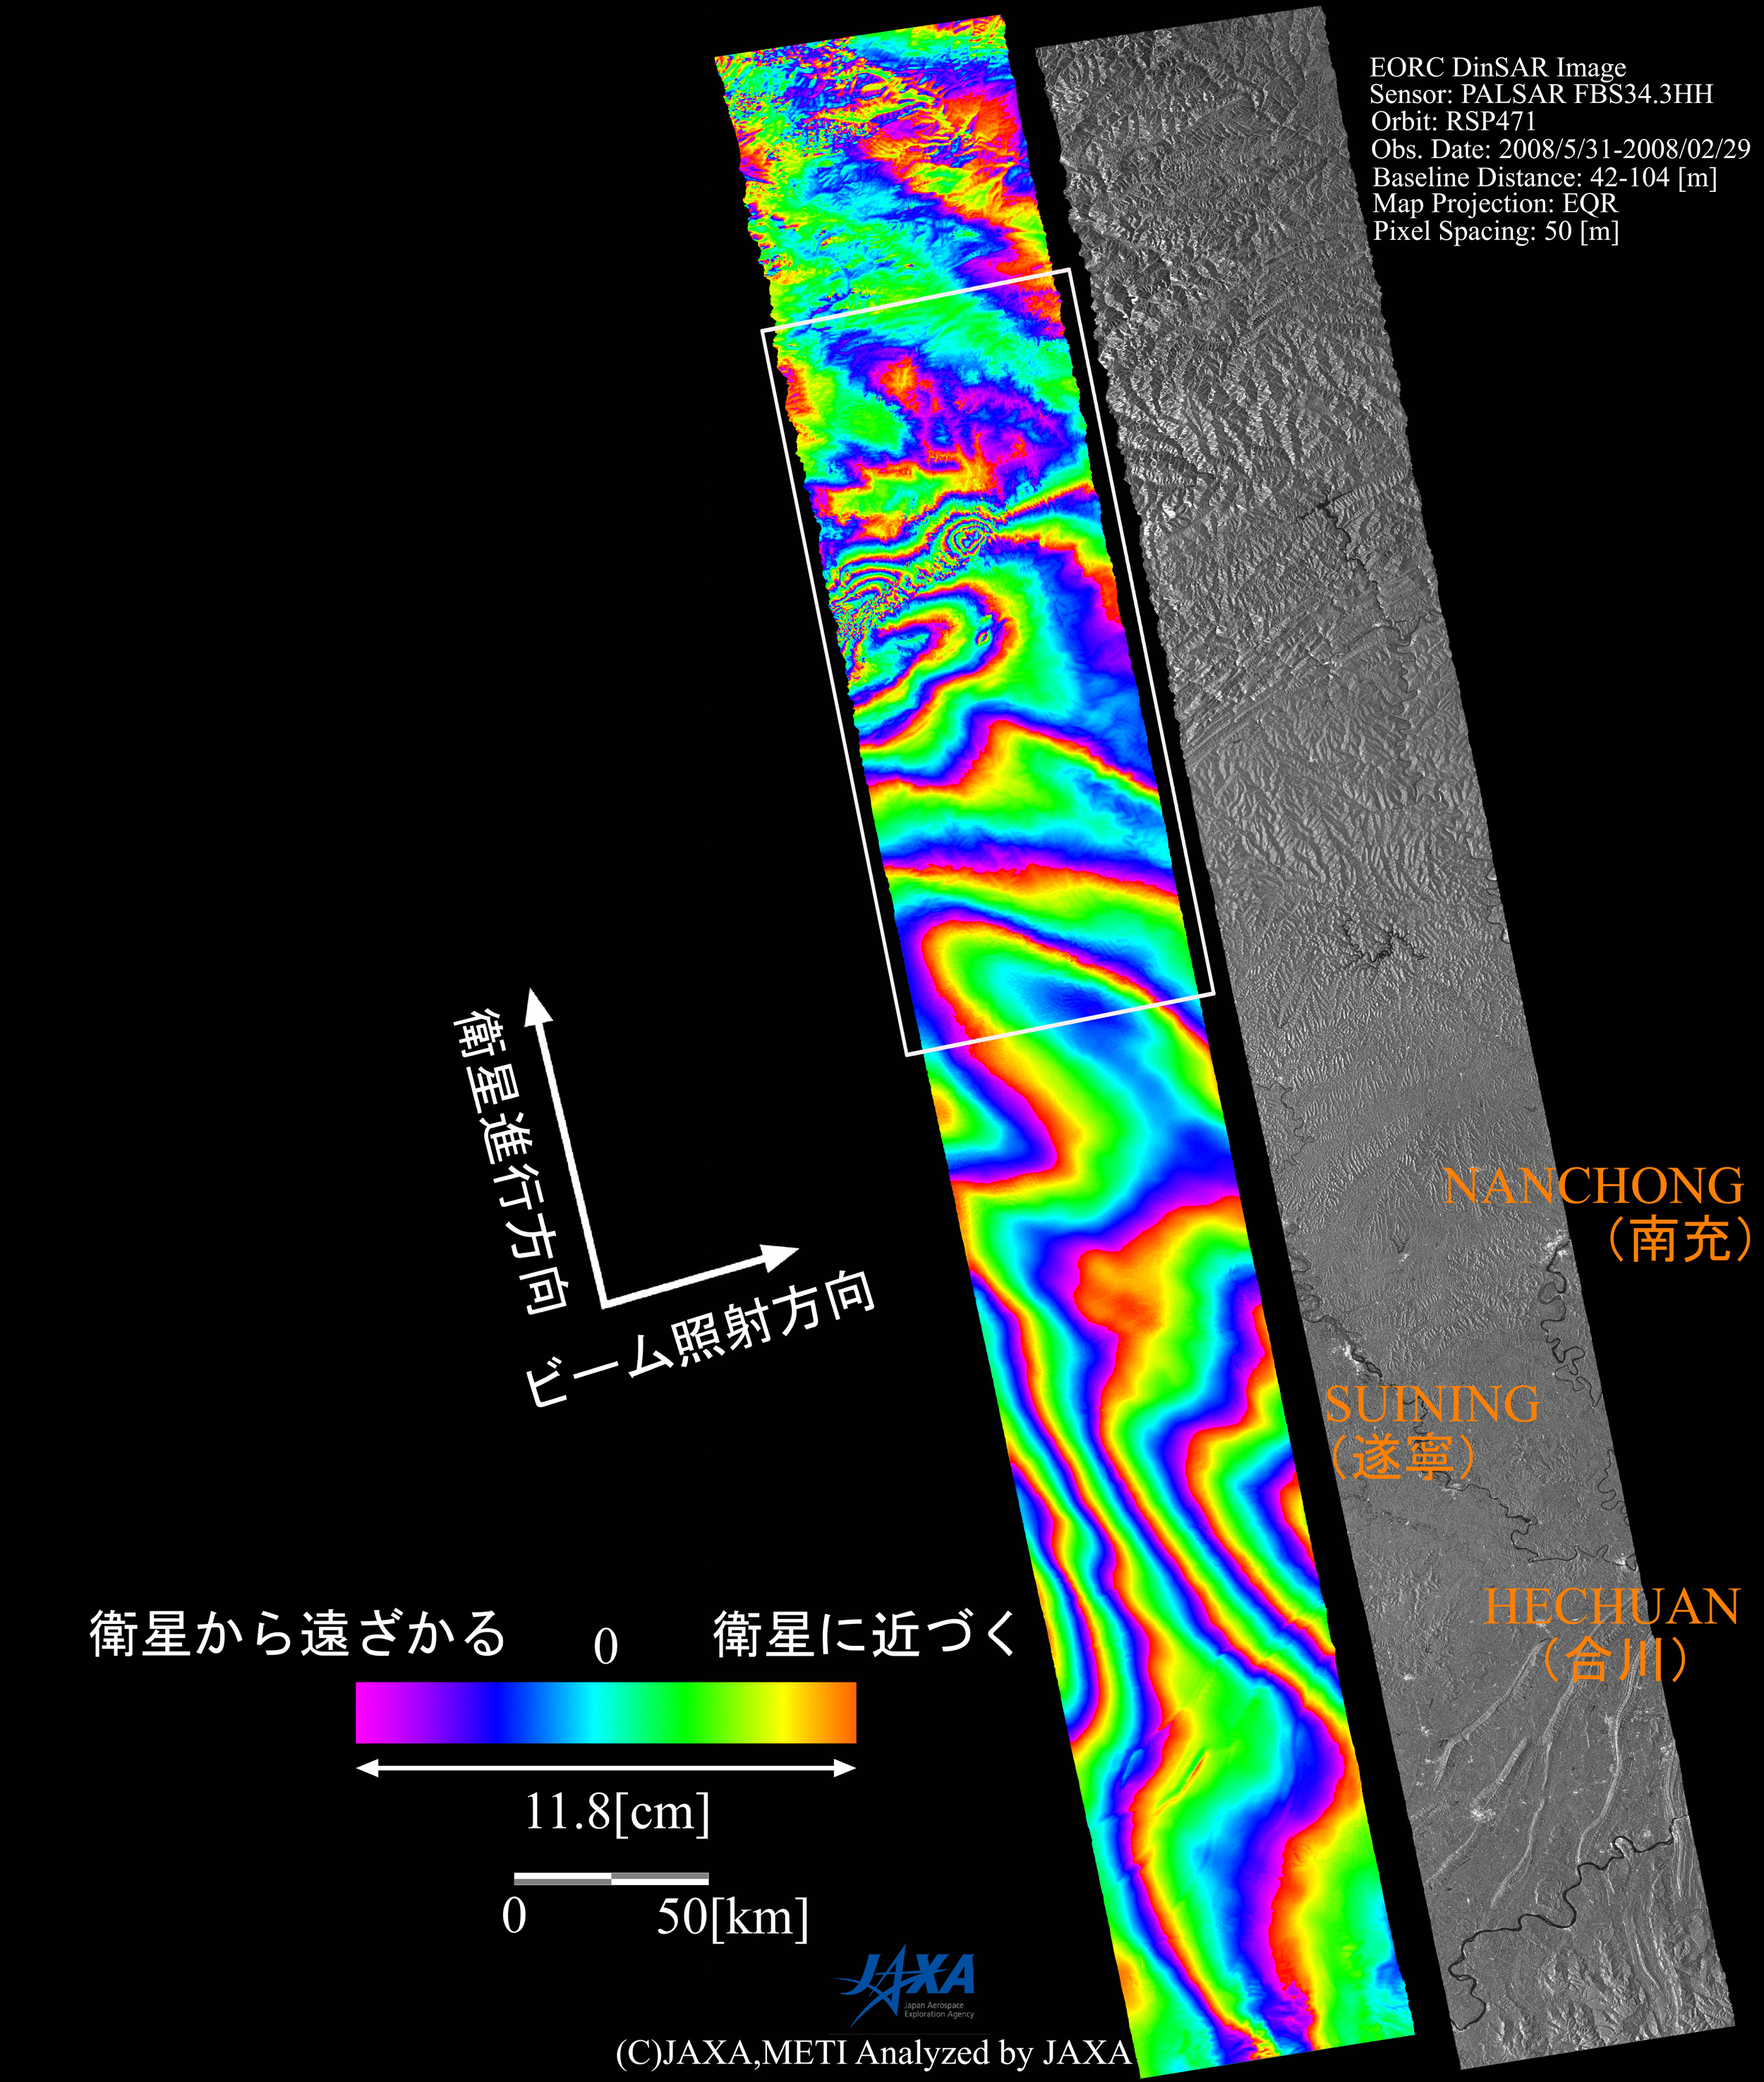 図1: 左：PALSAR差分干渉画像 右：地震後南北700km画像